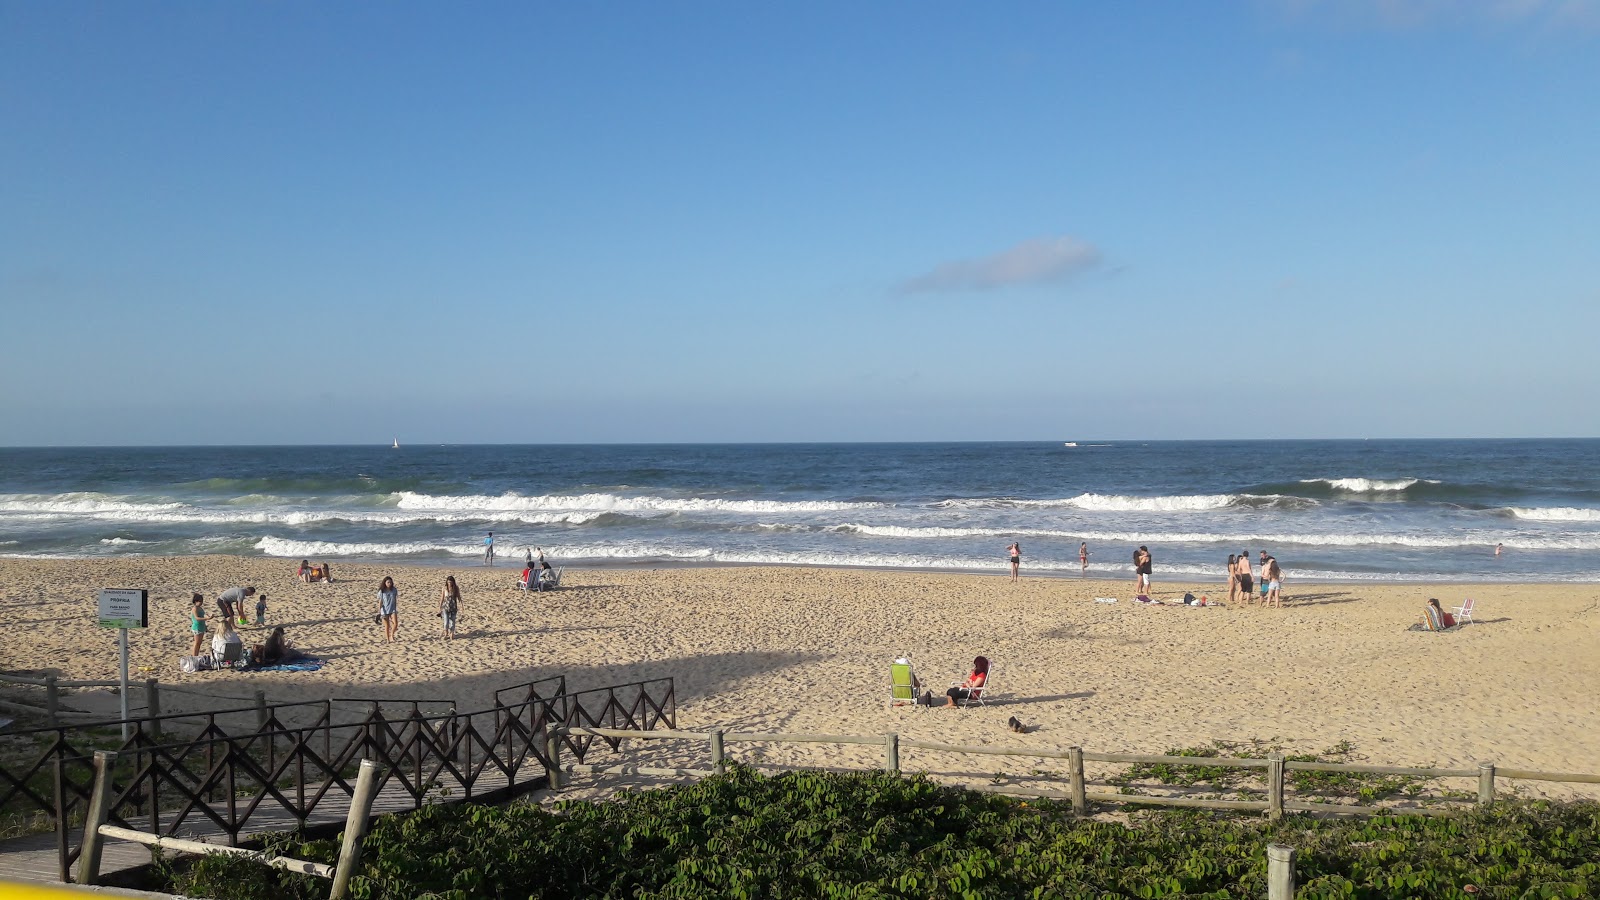 Praia dos Amores'in fotoğrafı - rahatlamayı sevenler arasında popüler bir yer